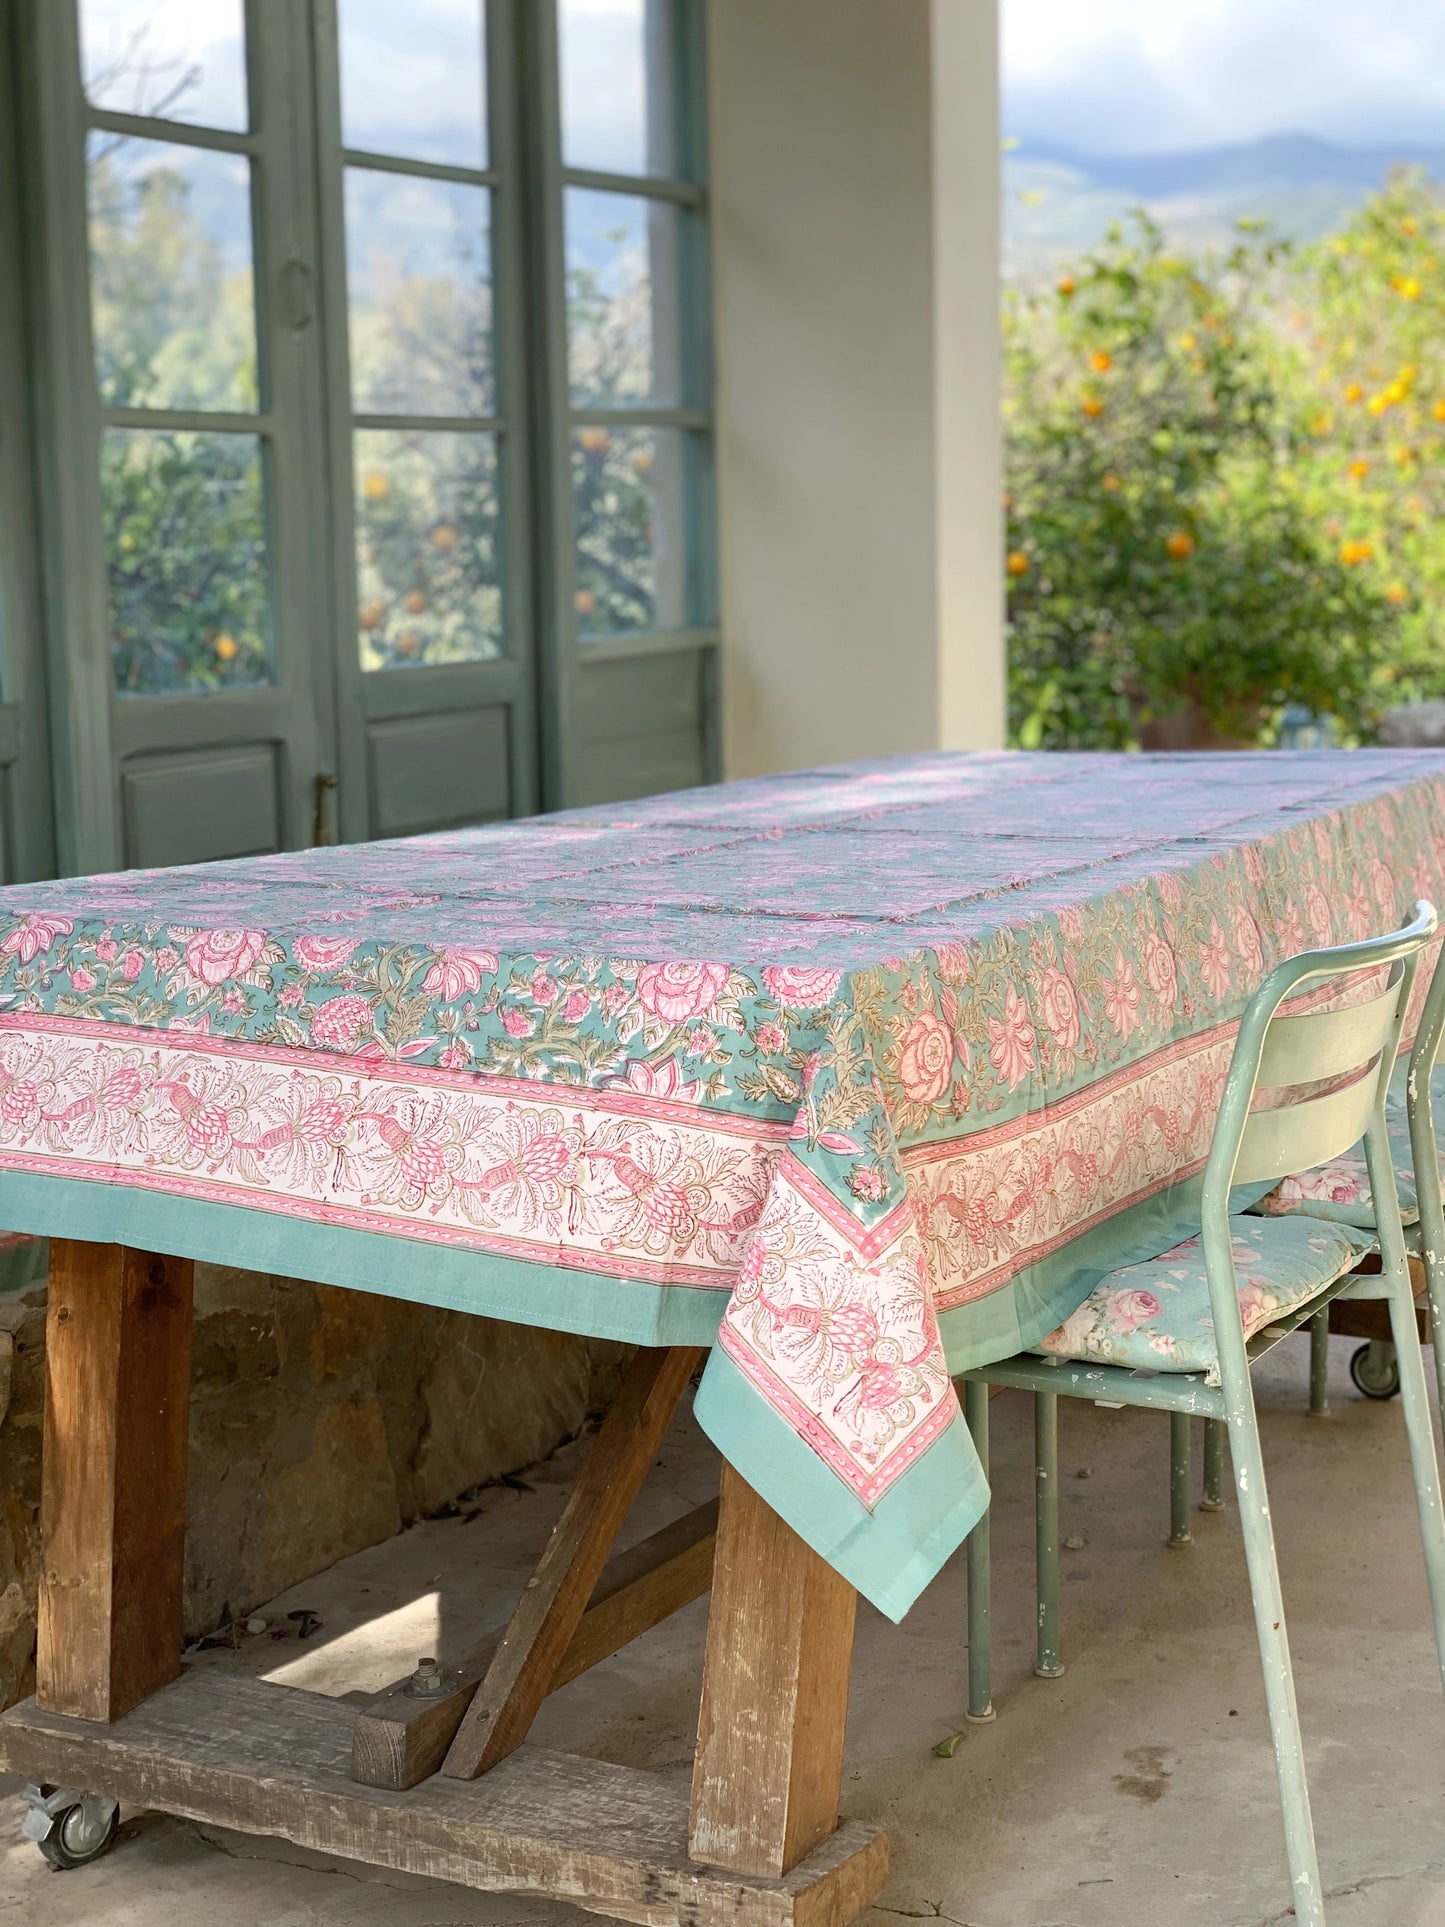 Mantel algodón puro estampado block print artesanal en India · Seis comensales · Mantel boho chic 100% algodón hindú · Flores turquesa rosa